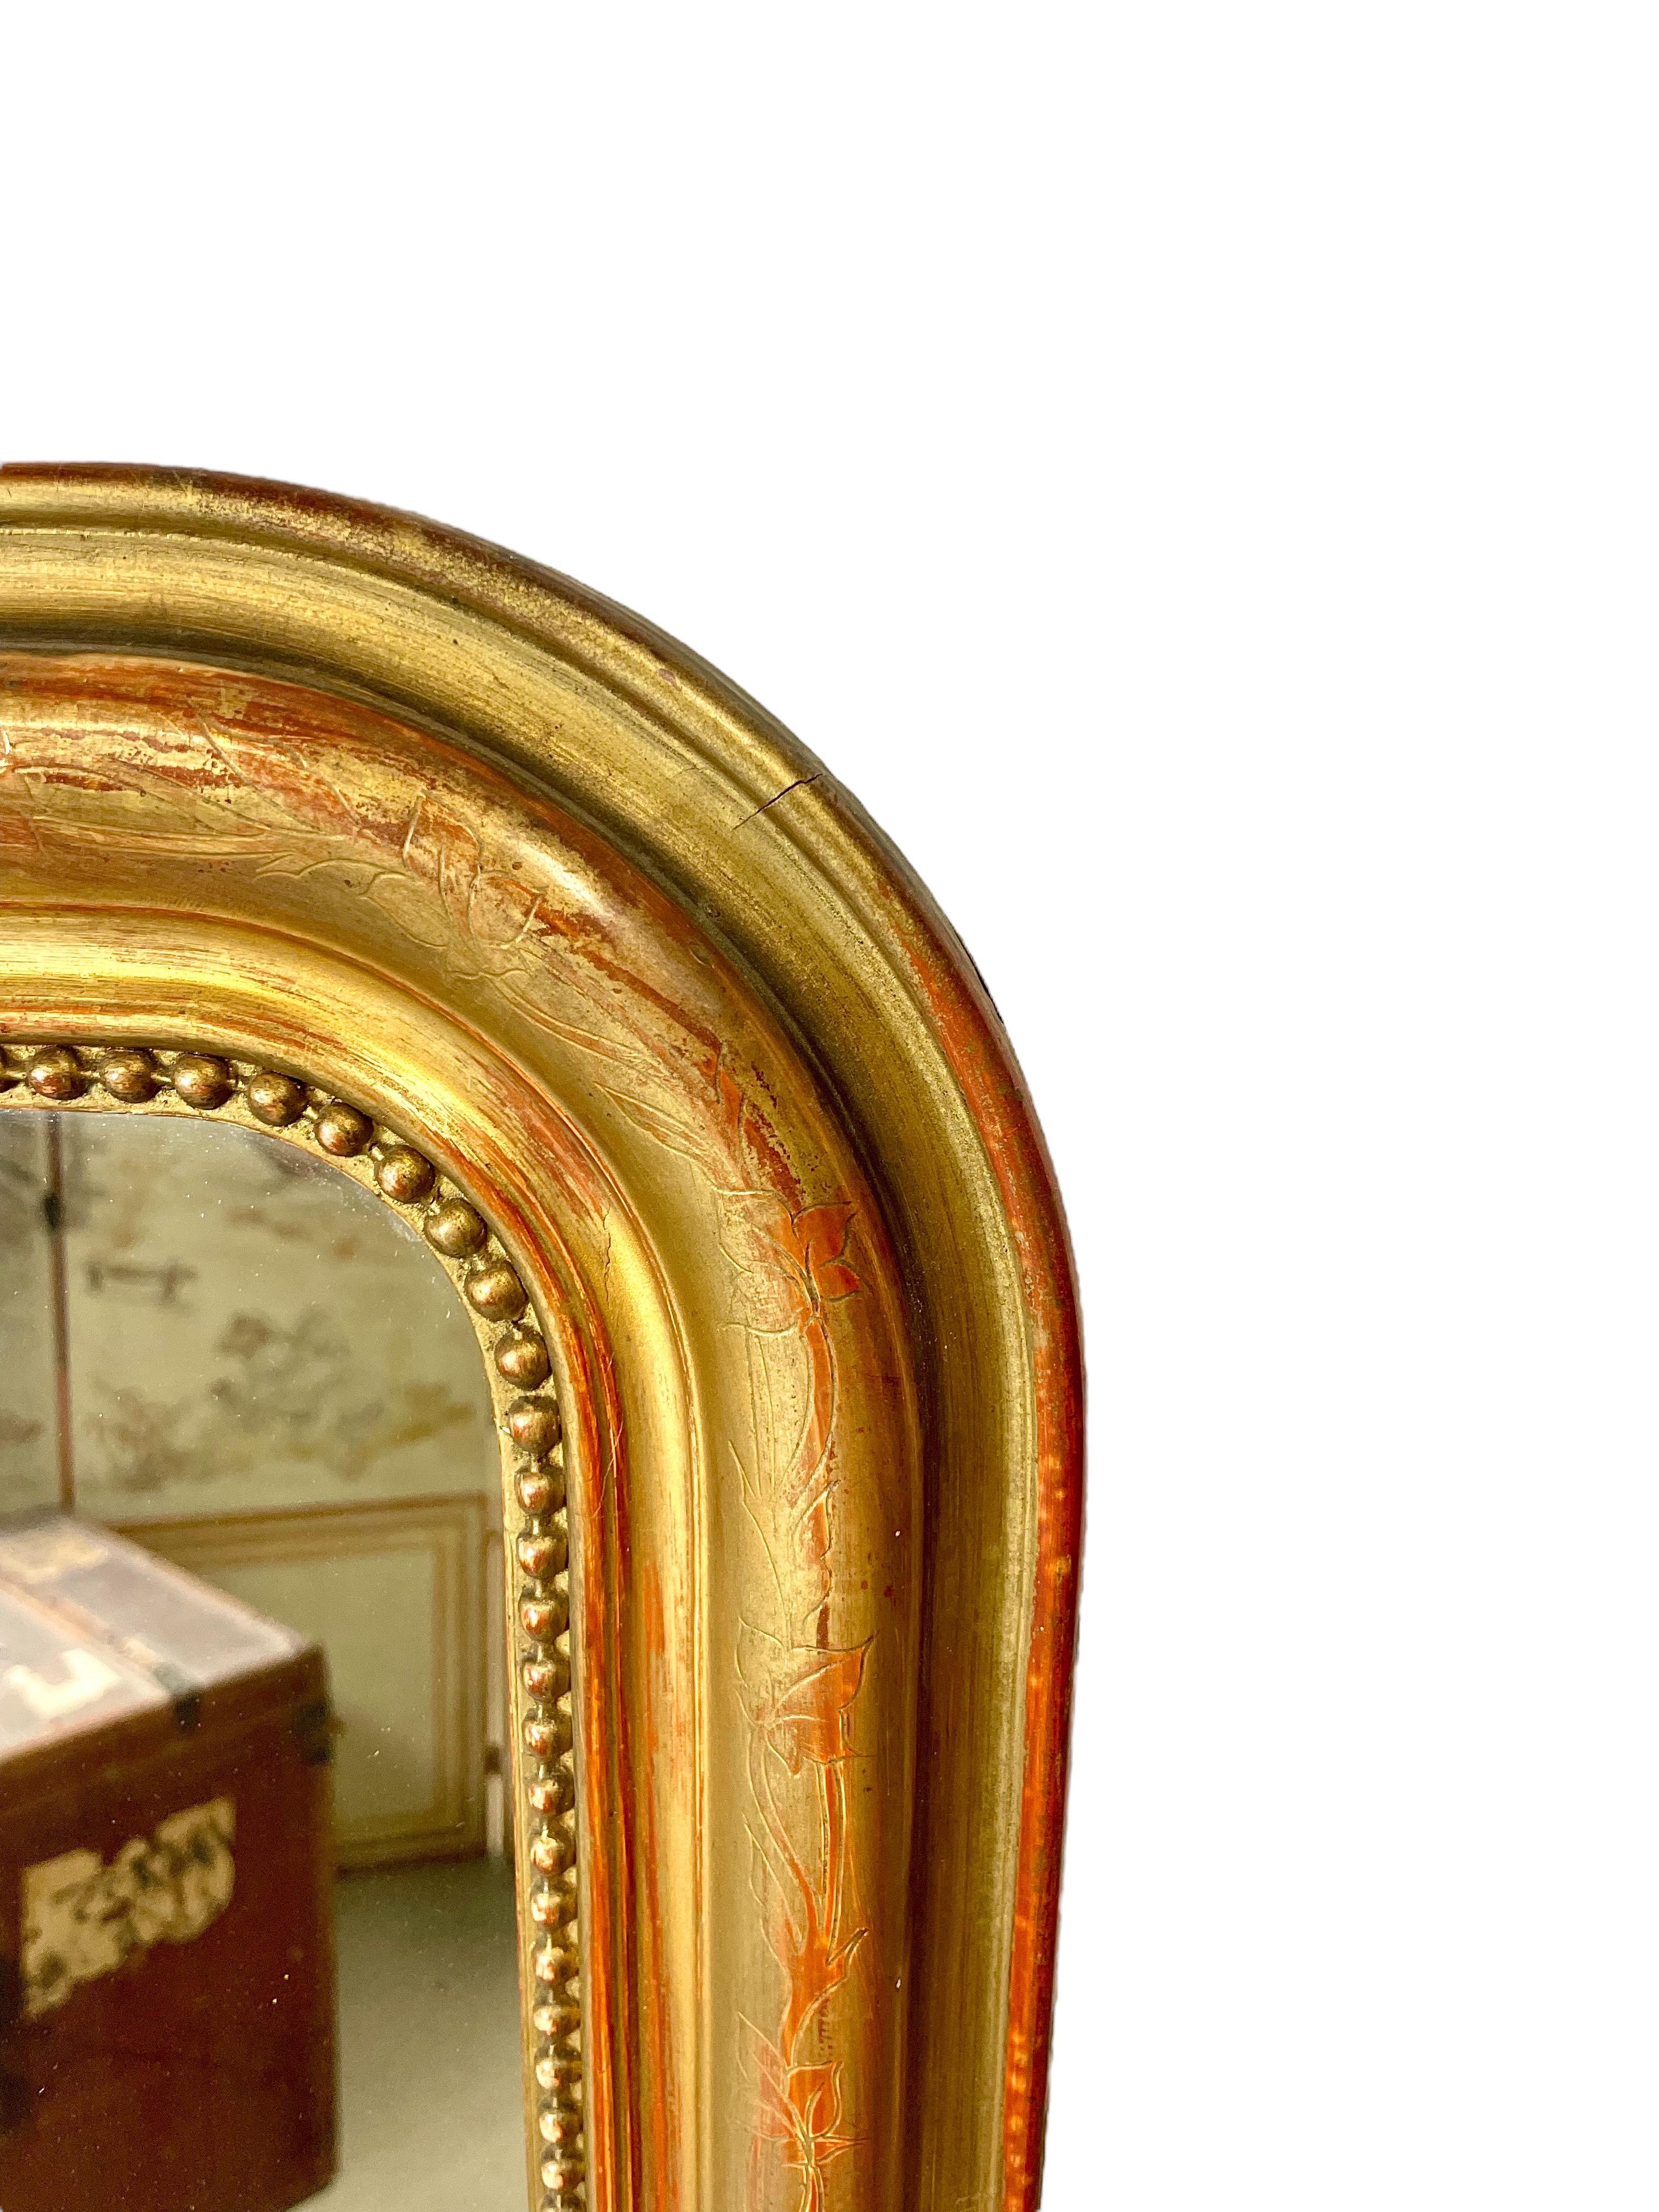 Encantador espejo de sobremesa de madera dorada de la época Louis Philippe, con el marco bruñido intrincadamente grabado con un diseño de hojas de hiedra entrelazadas y el borde interior ribeteado con un clásico motivo de 